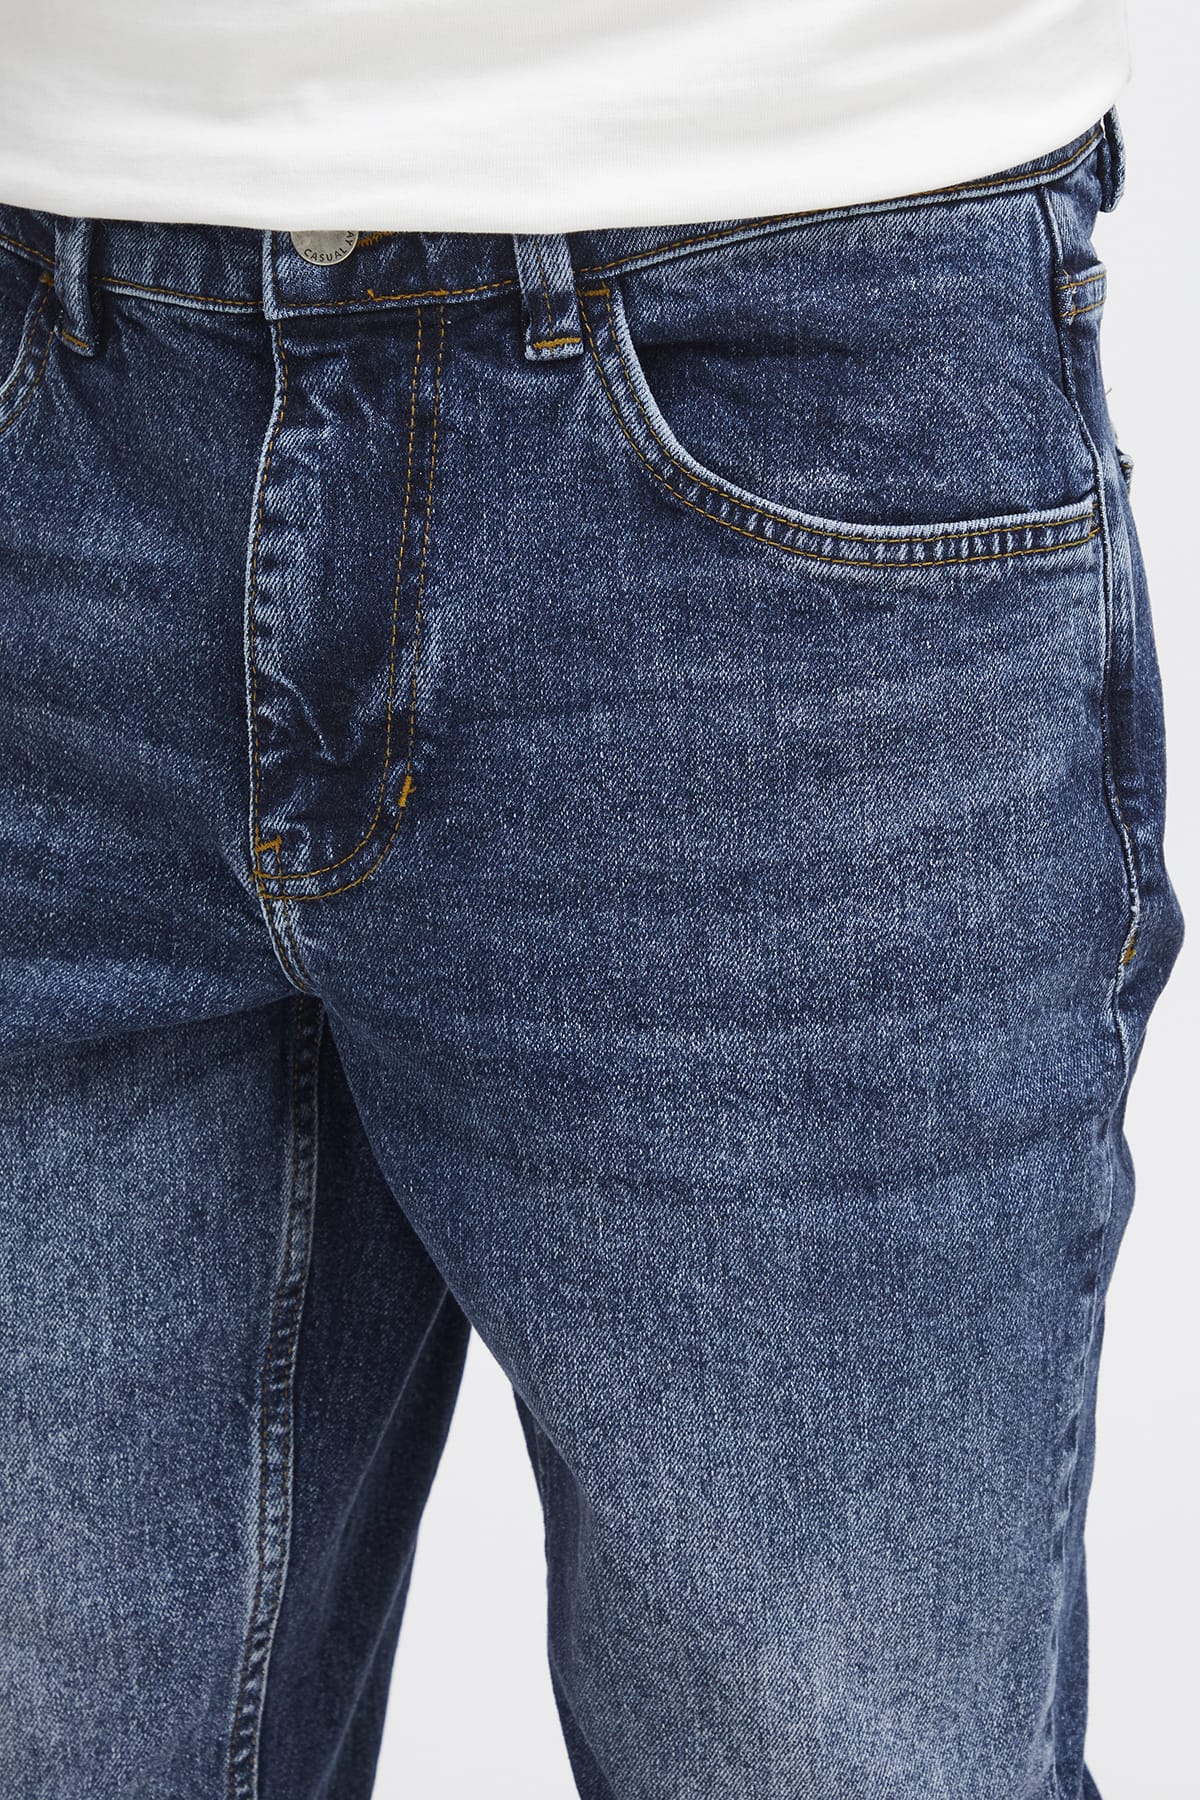 Jeans Karup 5 pocket regular jeans Denim mid blue Jeans Casual Friday 